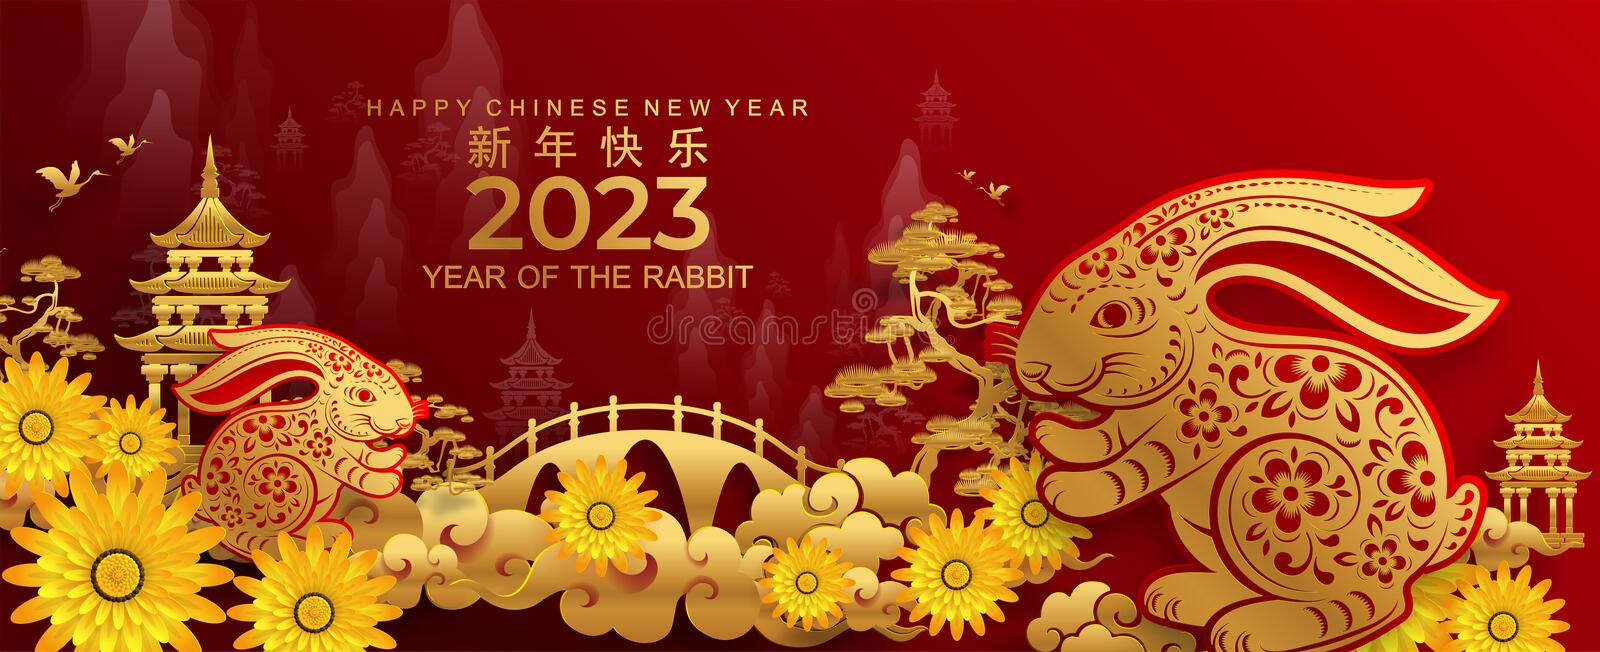 китайский новый год стим 2023 фото 110